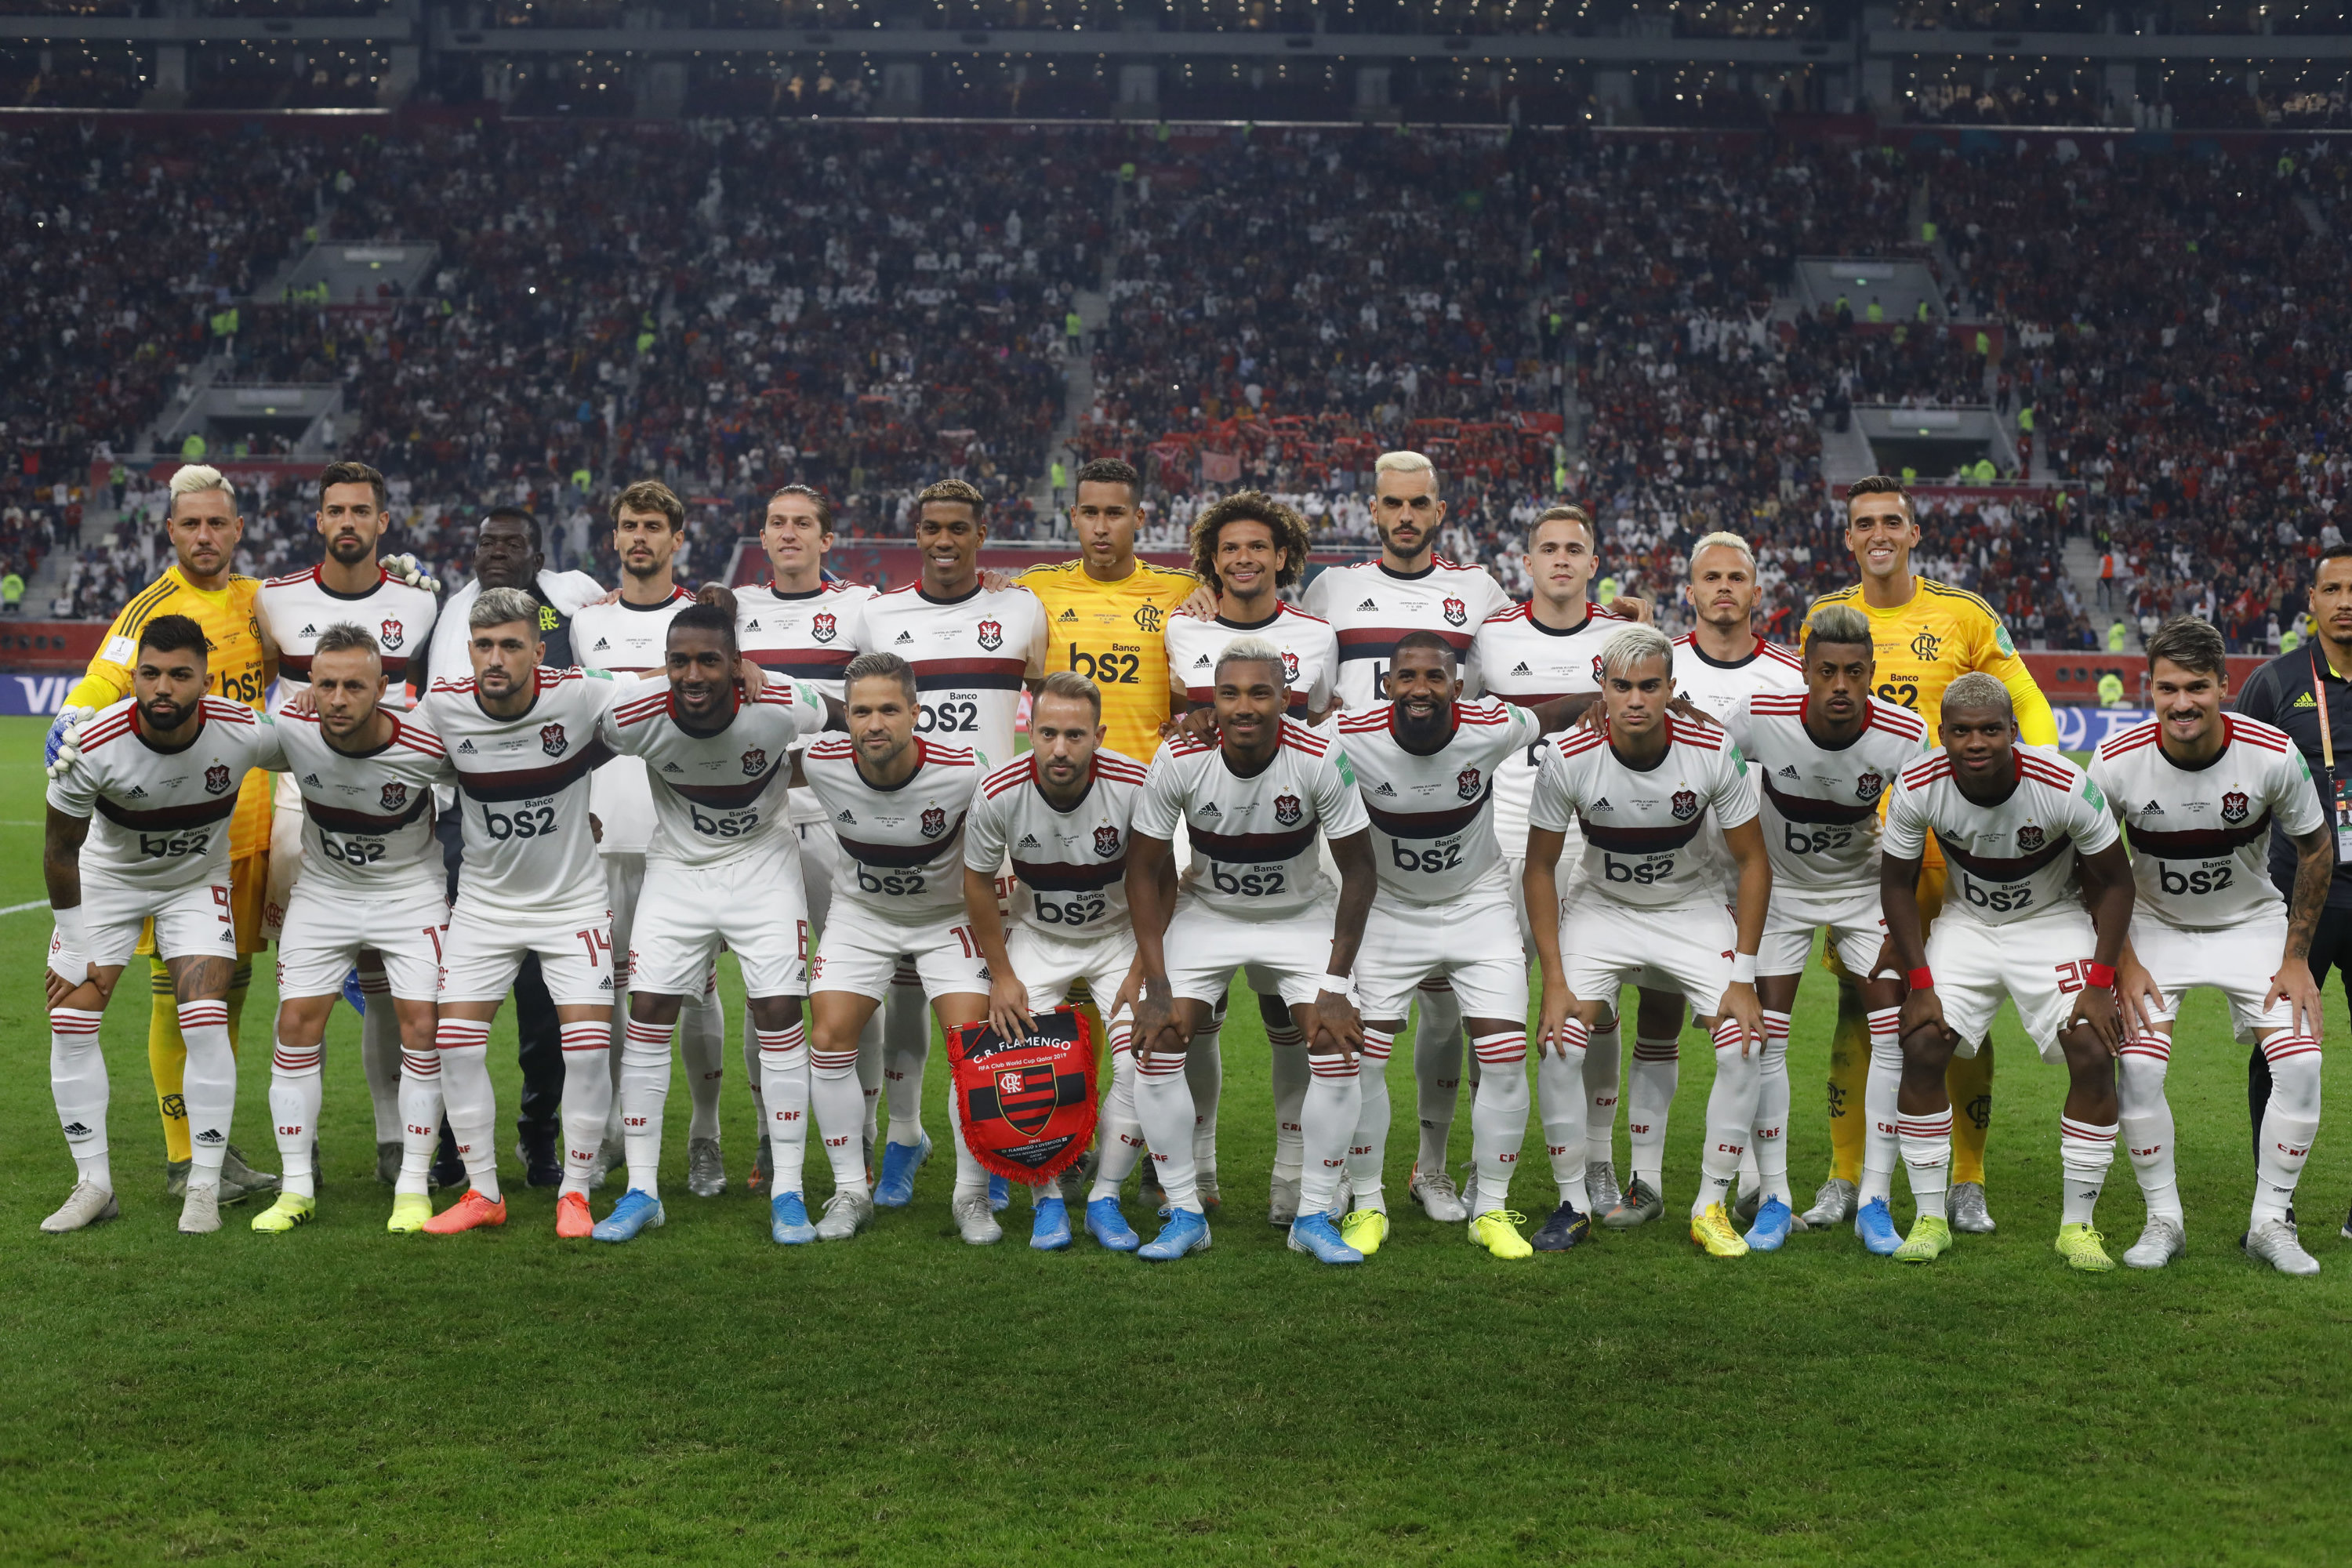 Derrota na final Mundial de clubes de 2019: Flamengo foi derrotado pelo Liverpool por 1 a 0 e ficou com o vice-campeonato. 